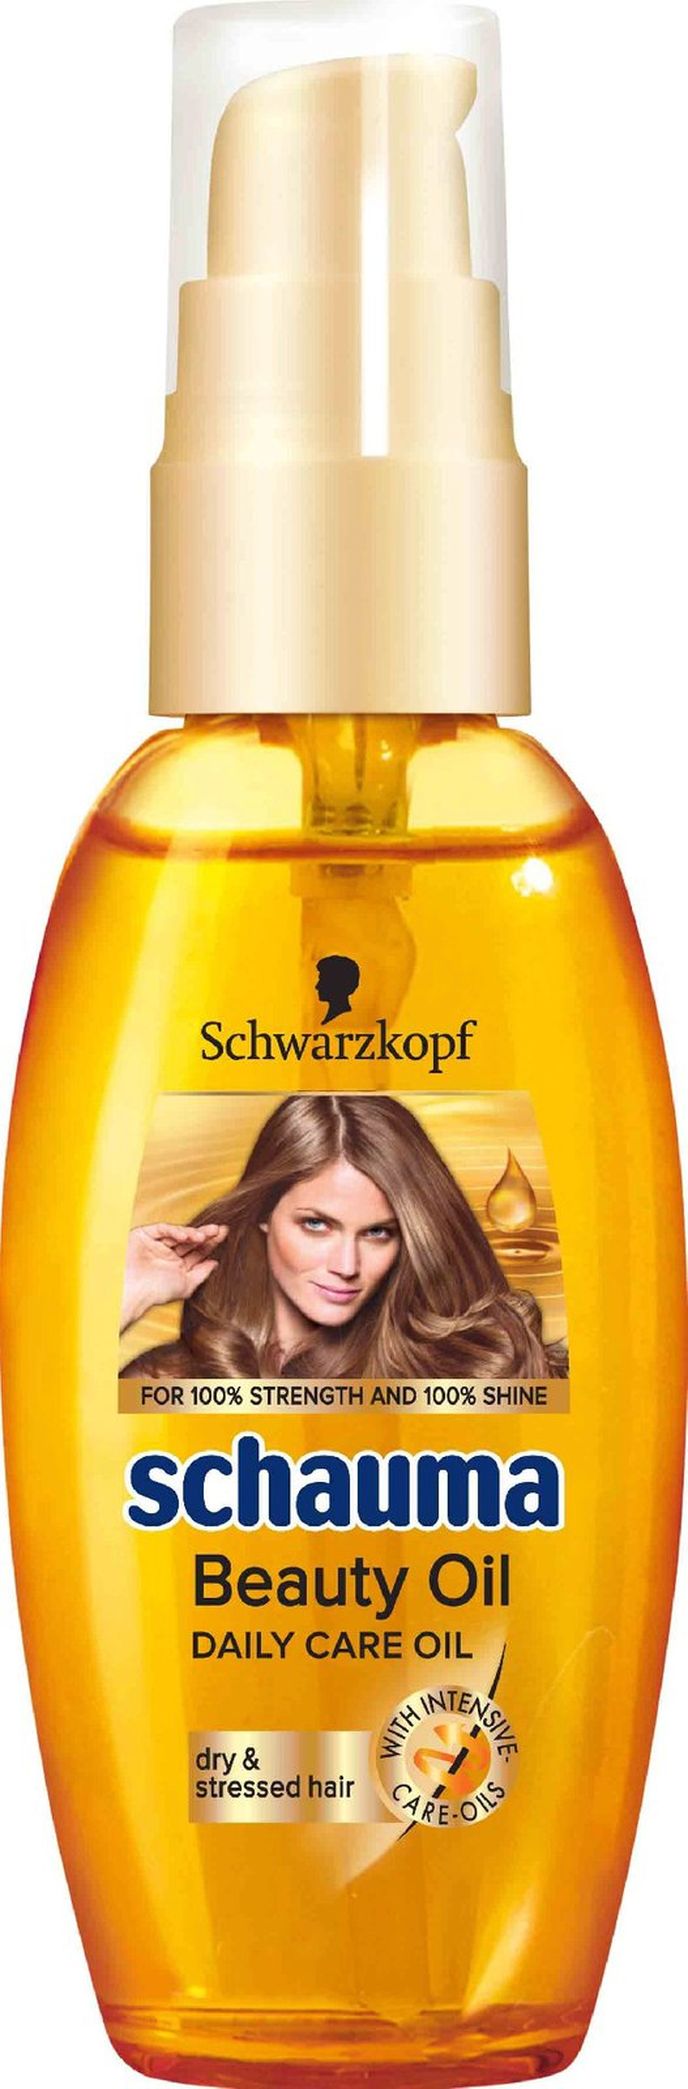 Pečující olej na vlasy, Schwarzkopf, Schauma Beauty Oil, 131 Kč